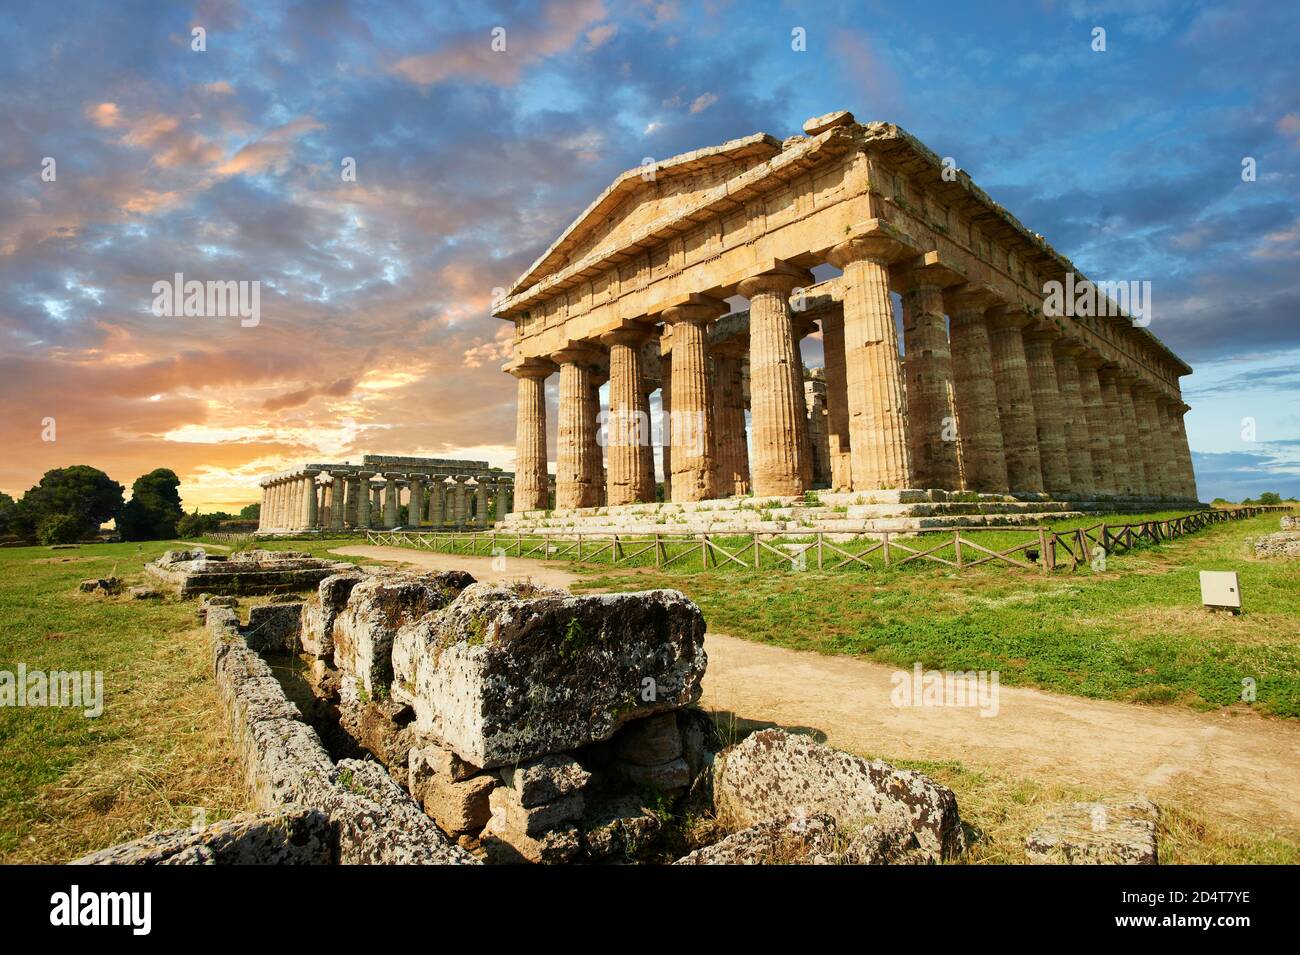 L'ancien temple grec Doric de Hera de Paestum construit en 460–450 av. J.-C. Site archéologique de Paestum, Italie. Banque D'Images